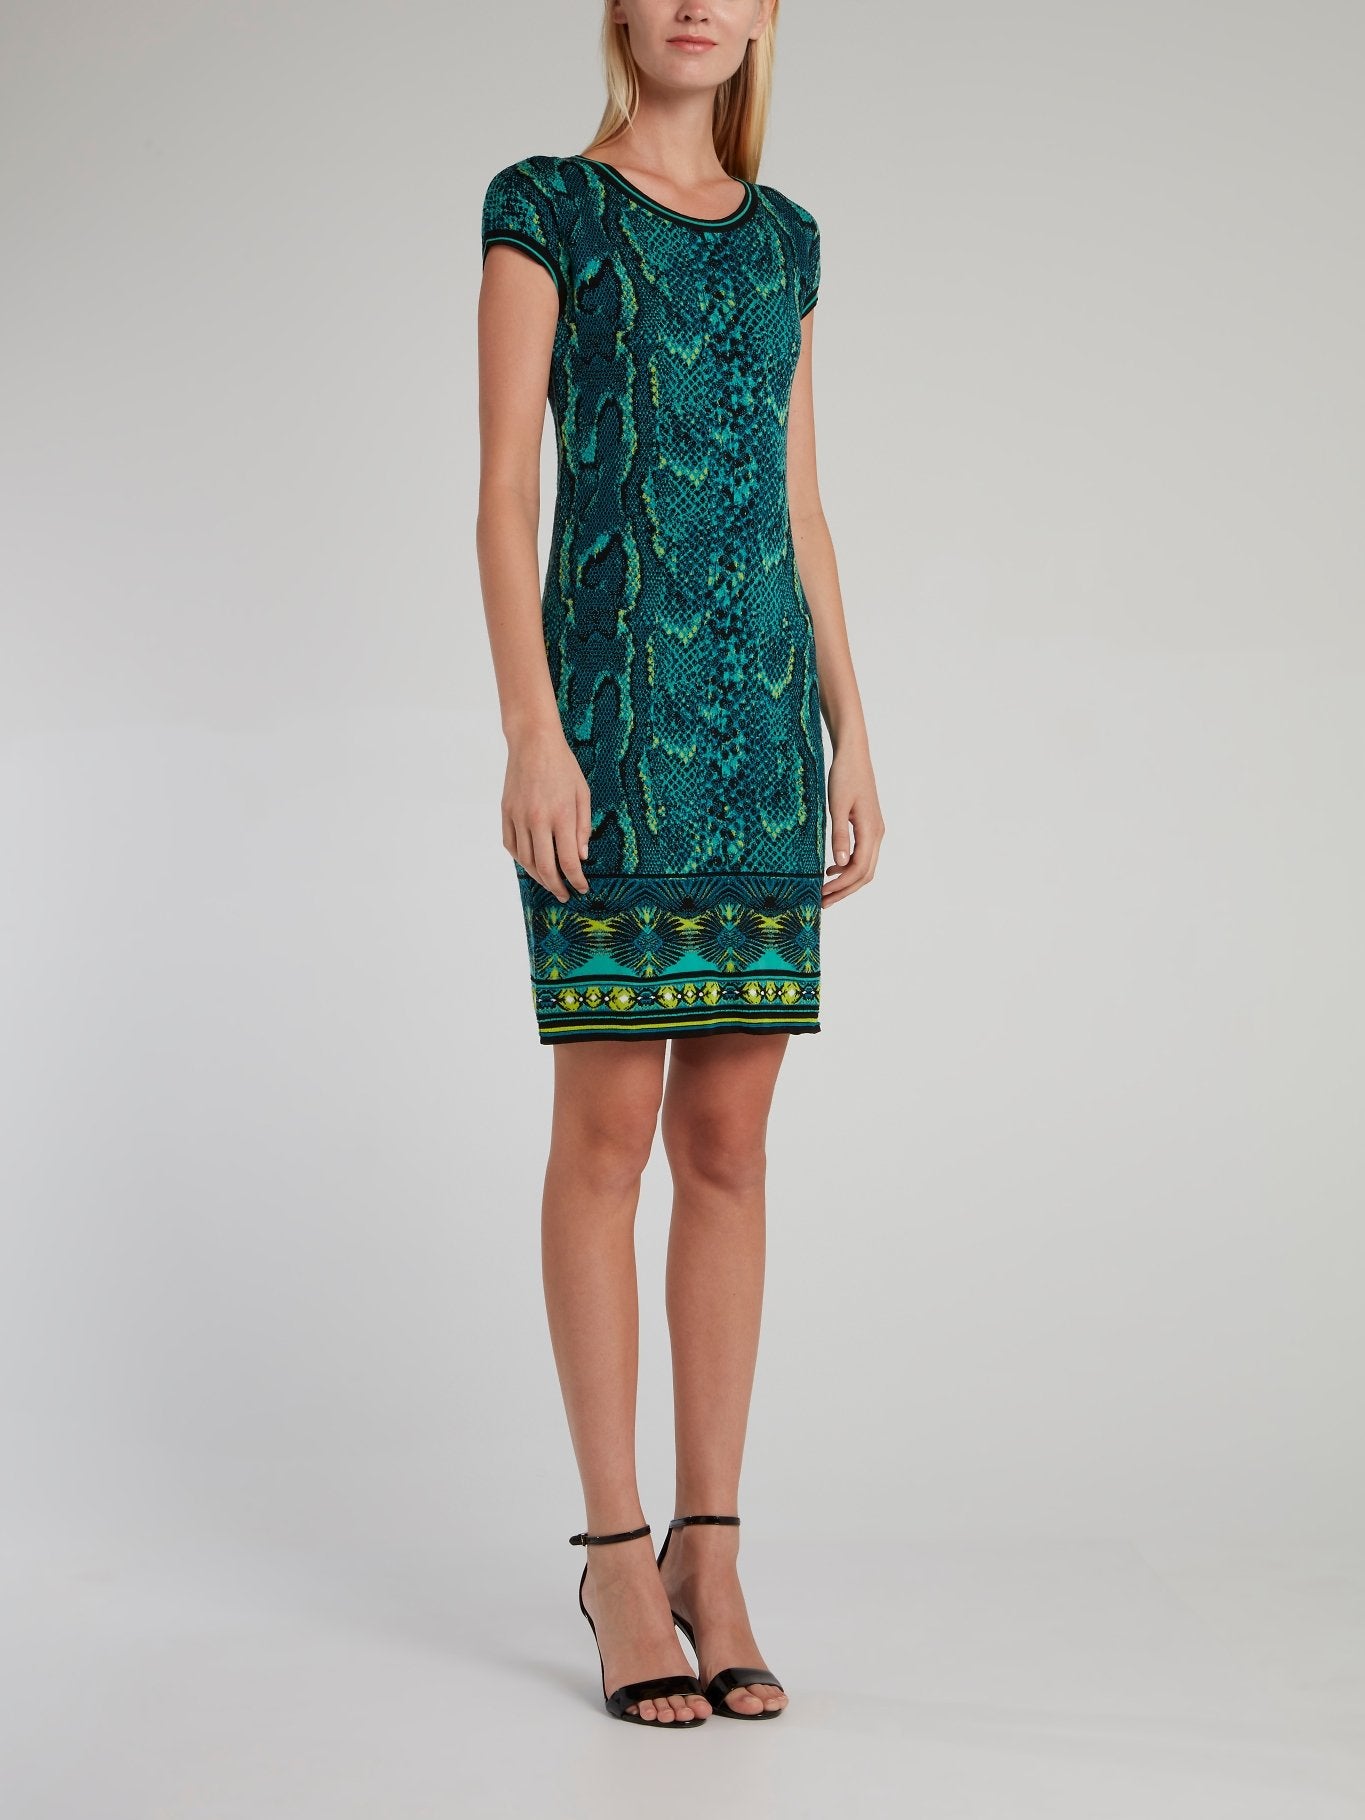 Зеленое платье-футляр со змеиным принтом